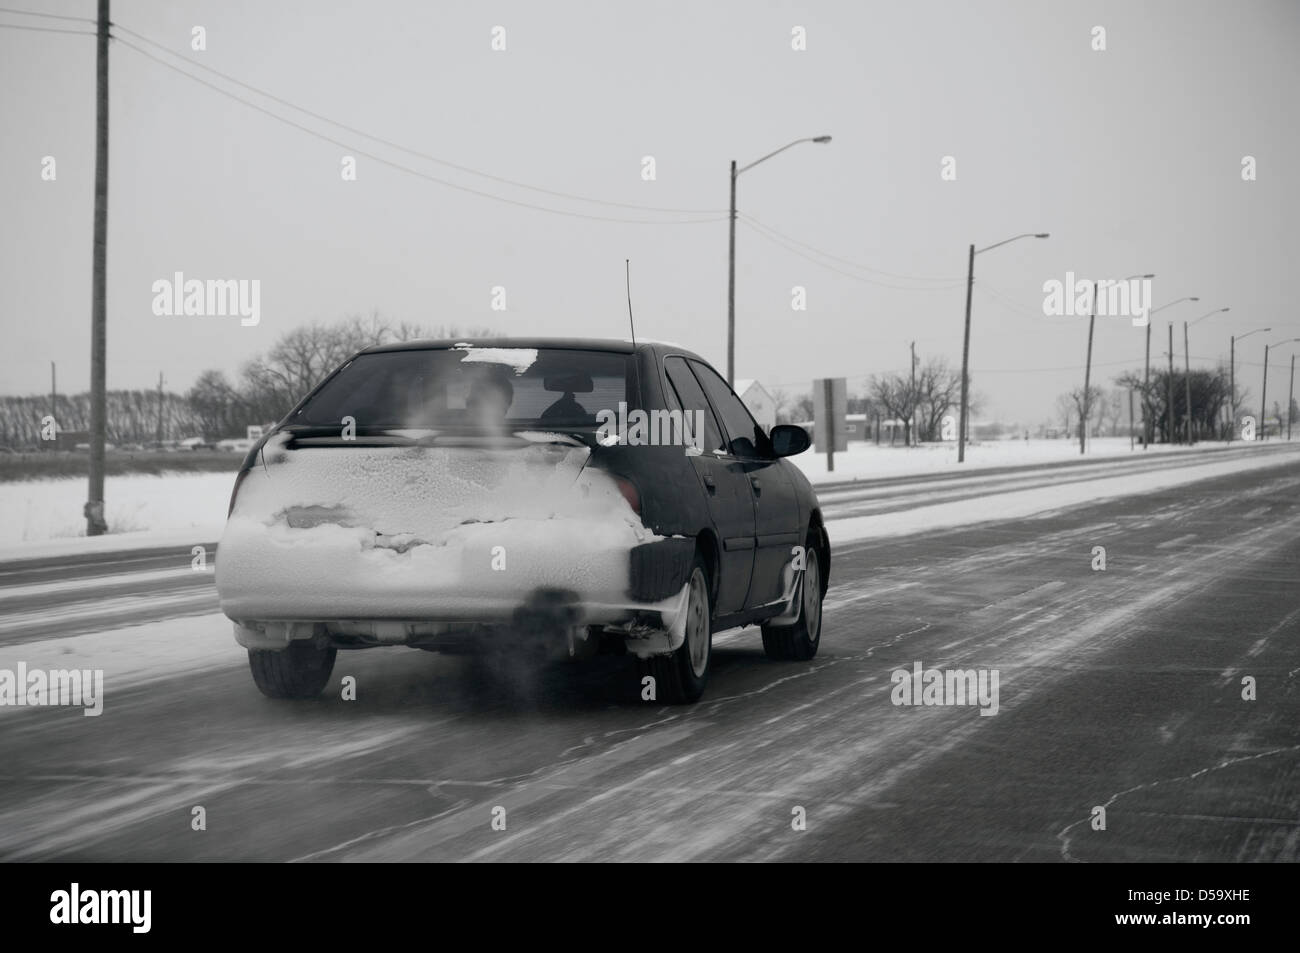 Arrière de voiture est plâtré avec la neige sur une autoroute vide avec poudrerie dans les régions rurales du Canada Banque D'Images